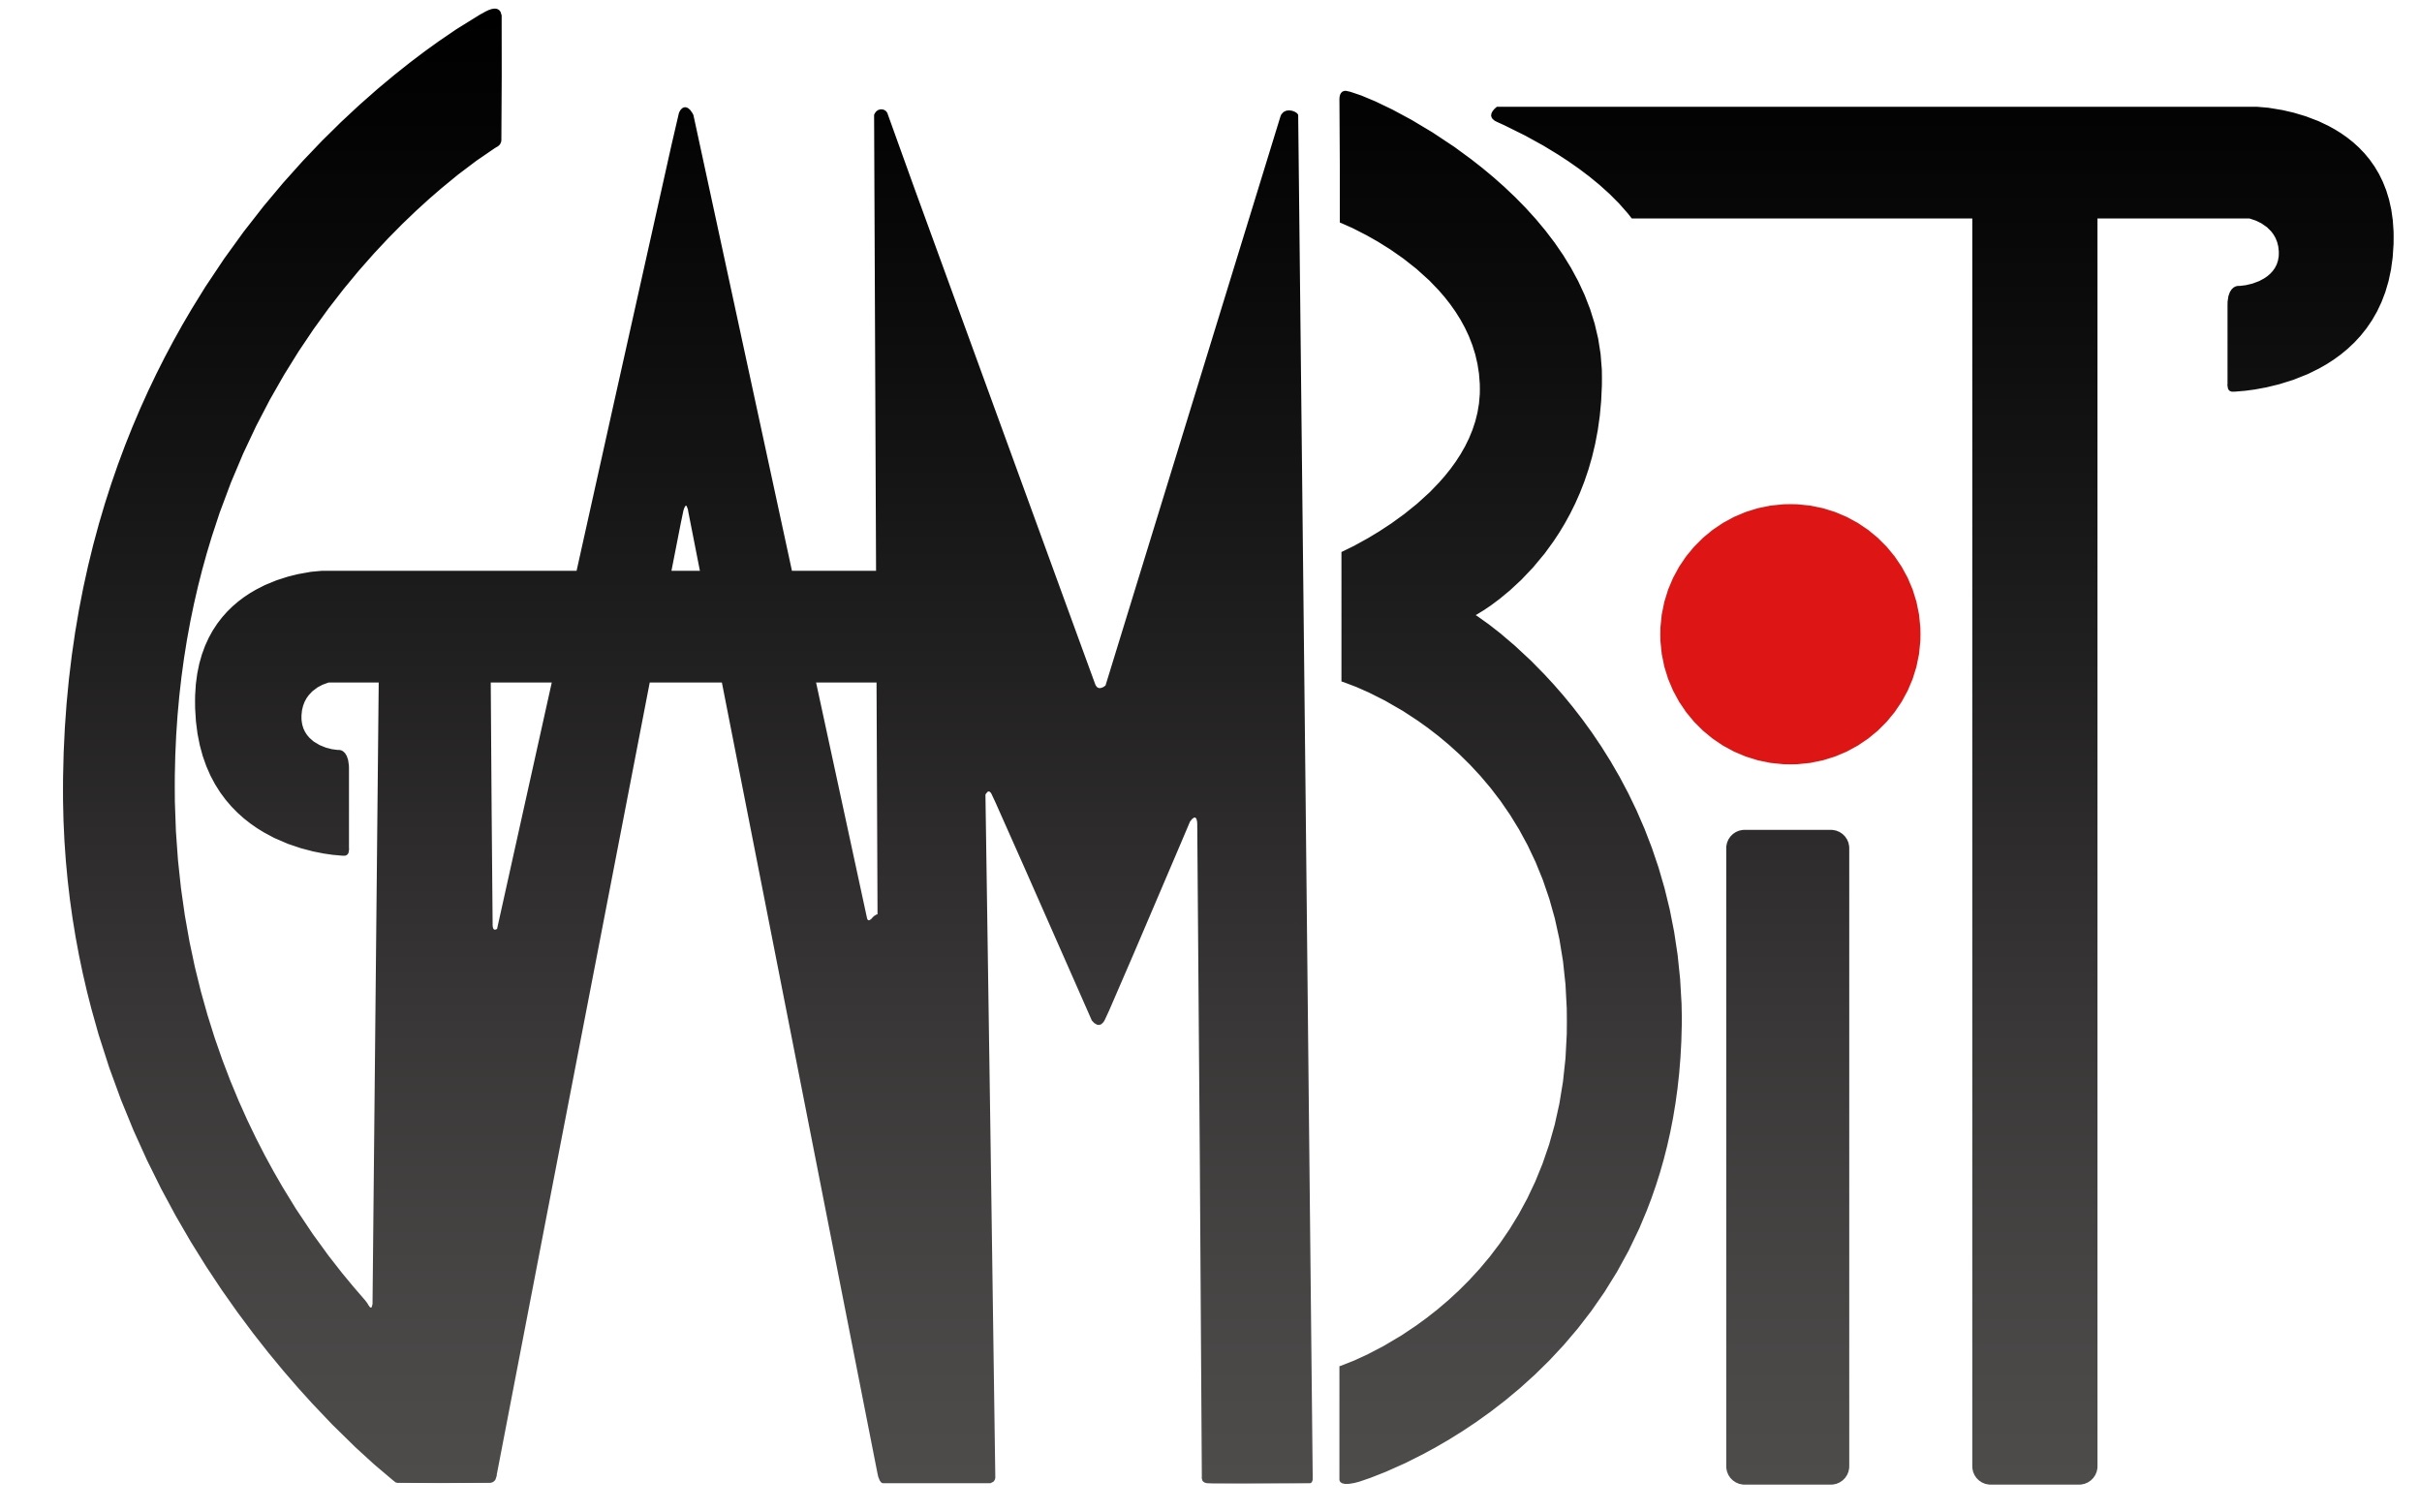 GAMBIT Logo.jpg fa829090b00e89534606d7be5fb84c21